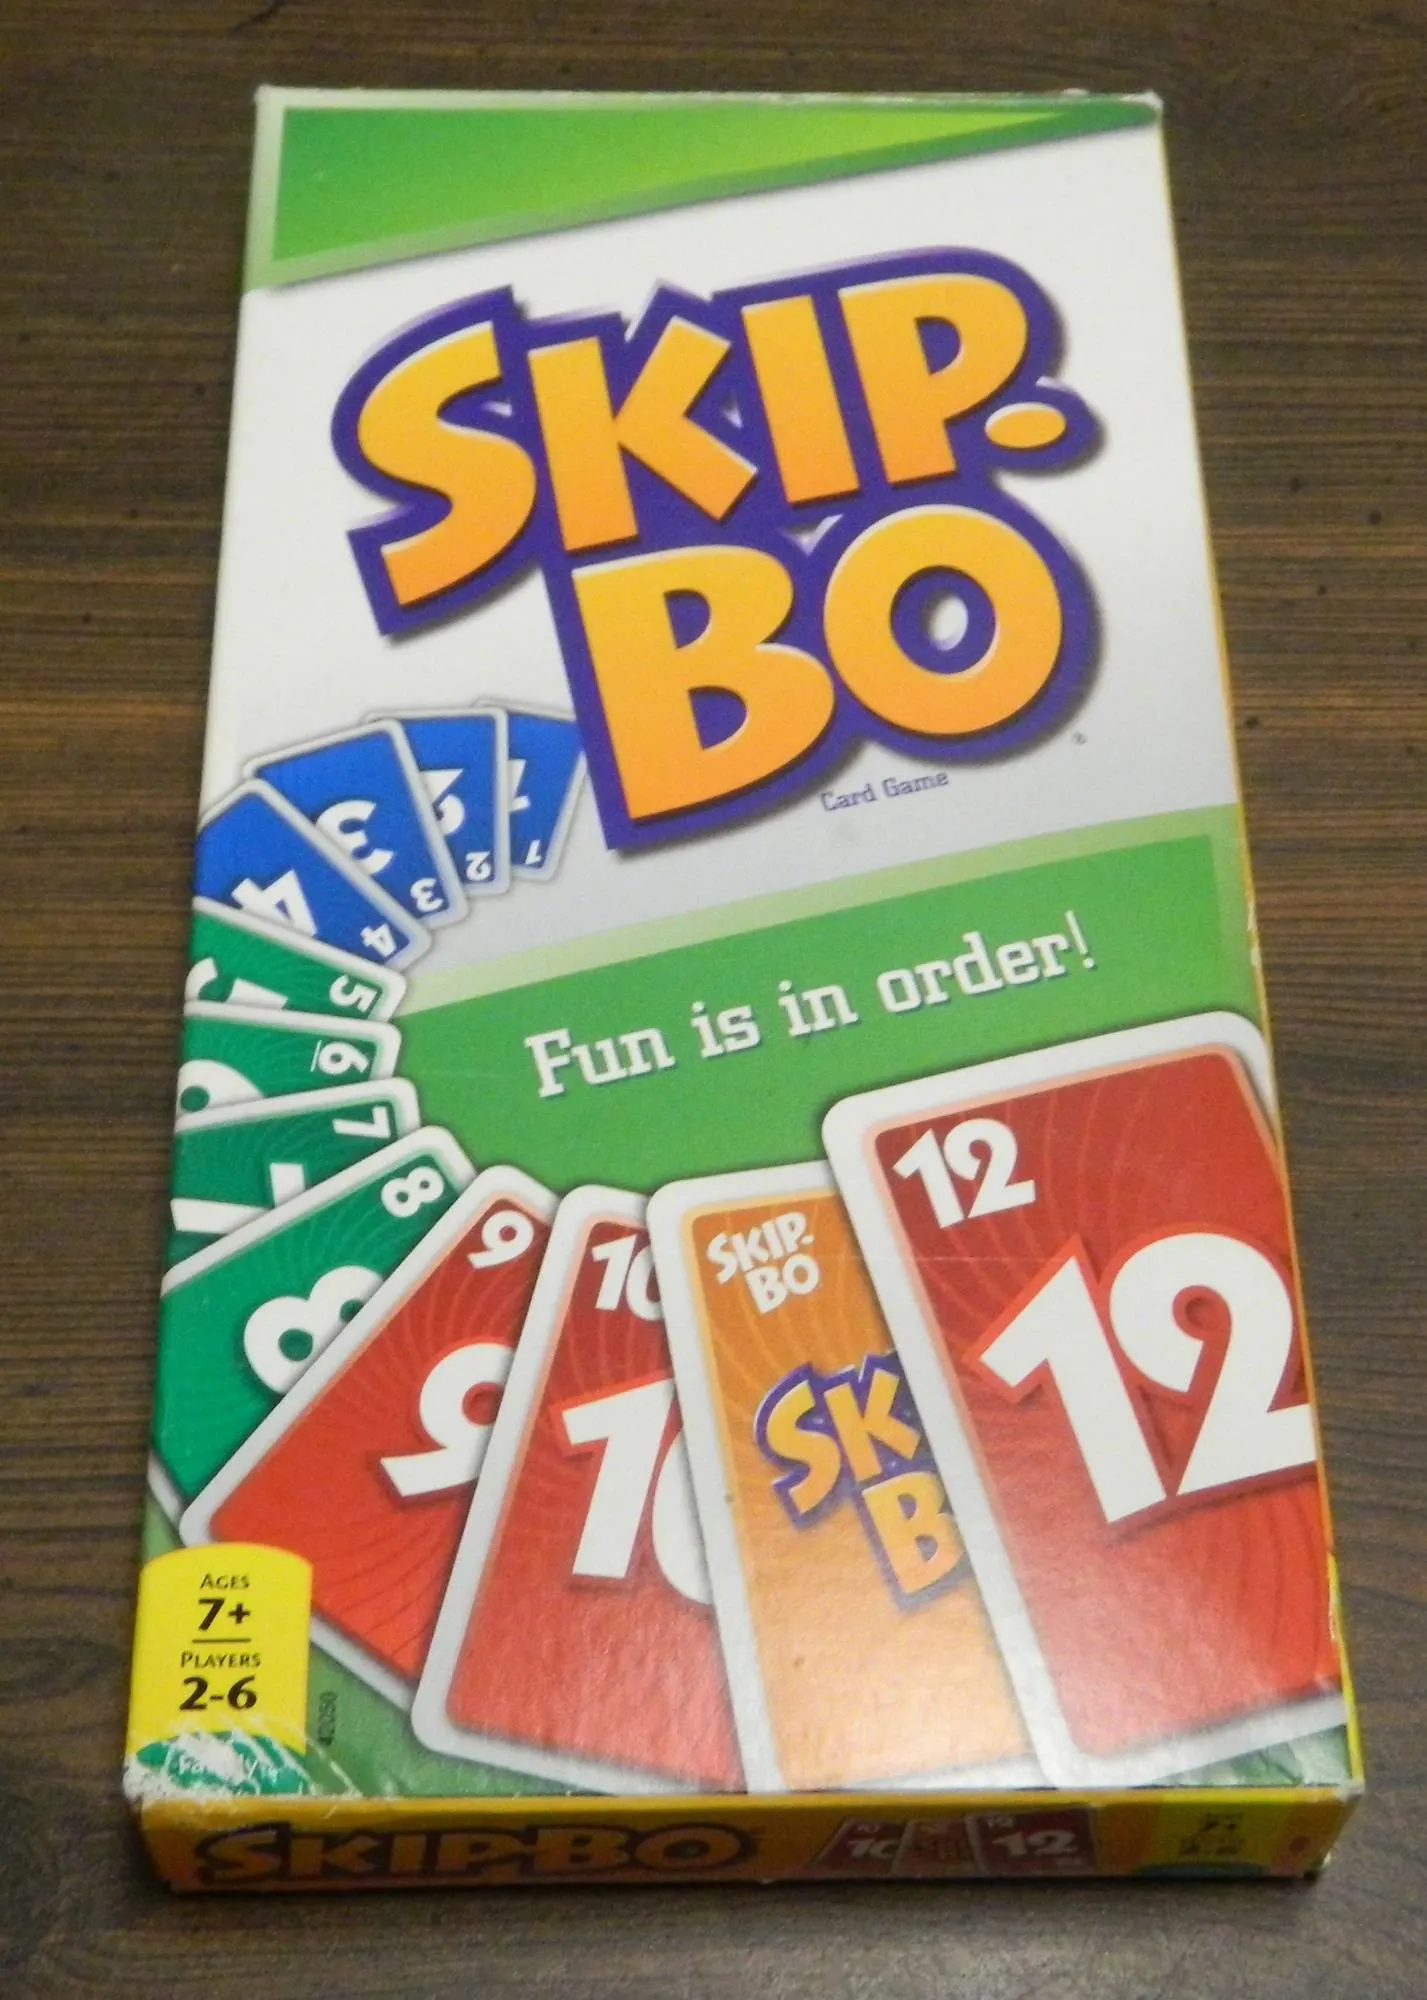 Skip-Bo Skip Bo Card Game